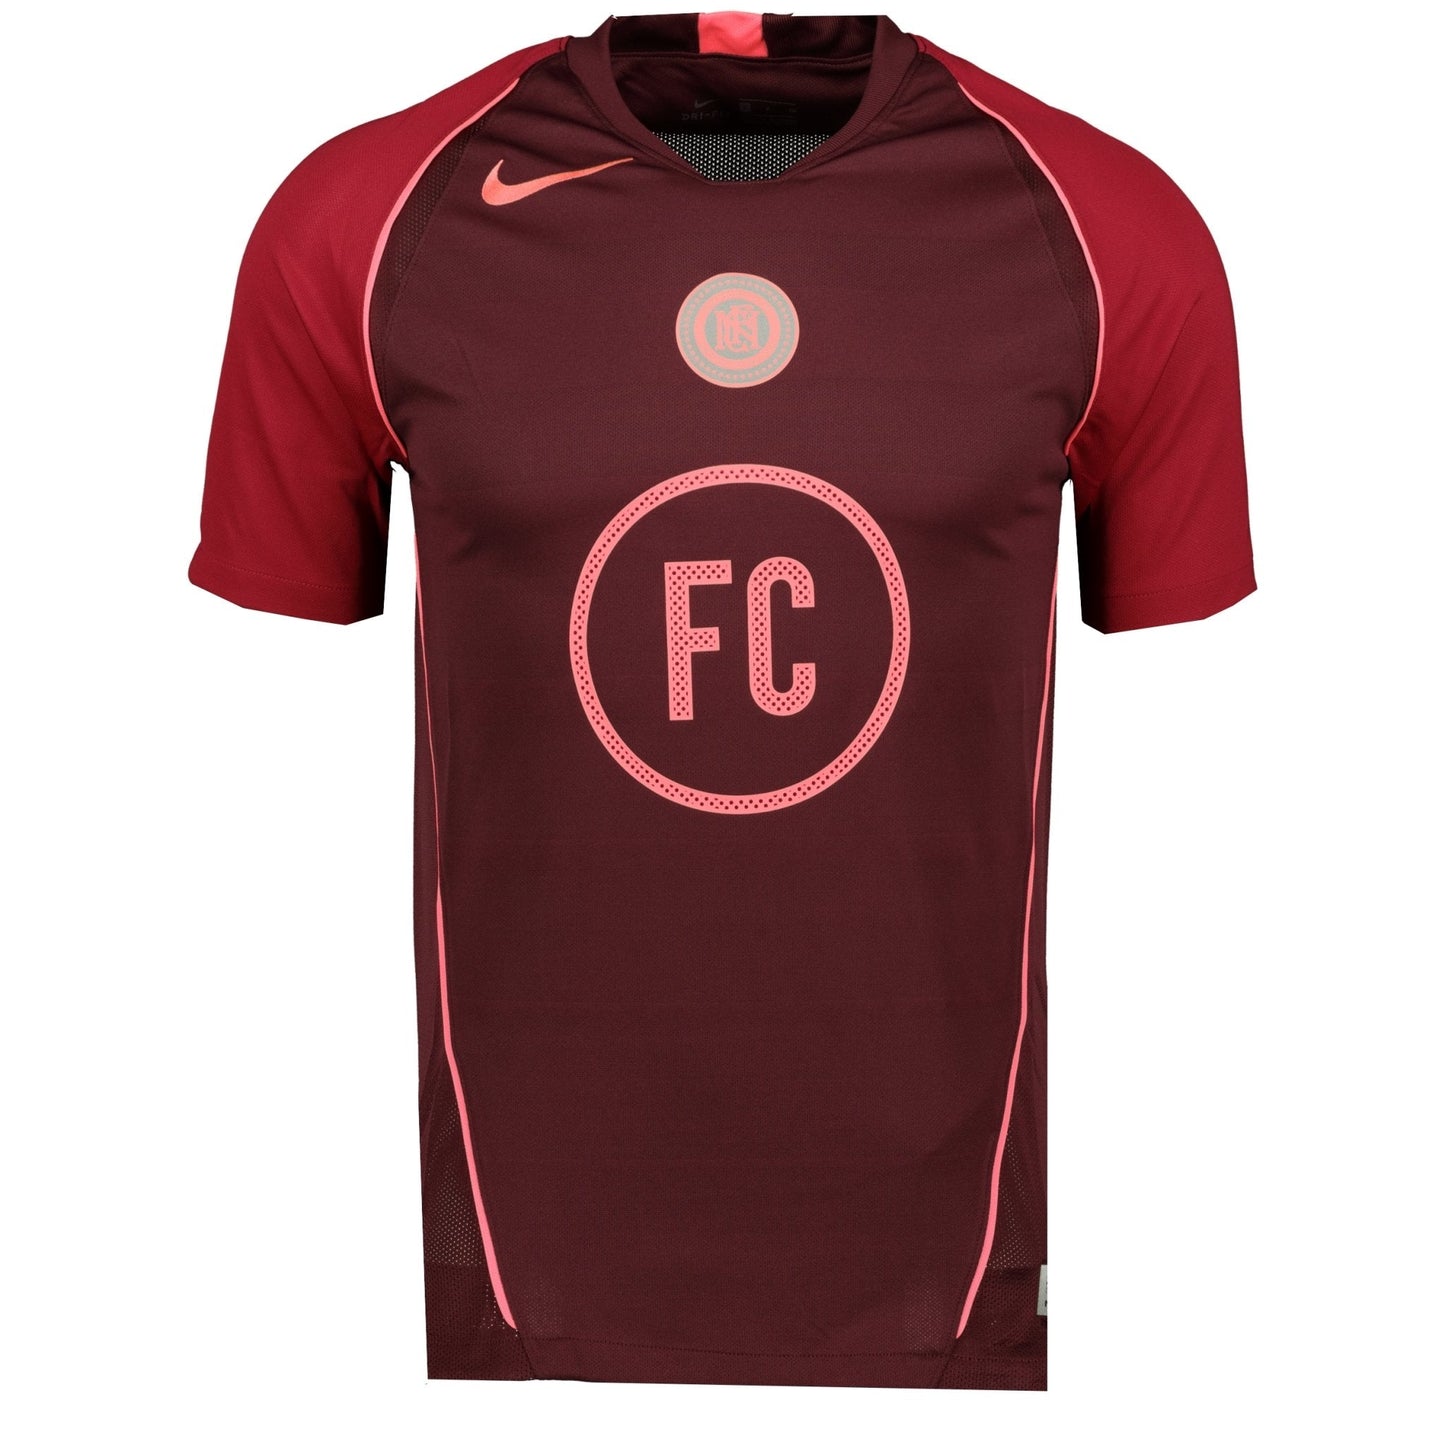 Nike Dri-Fit Nike FC T-Shirt Maroon - LinkFashionco